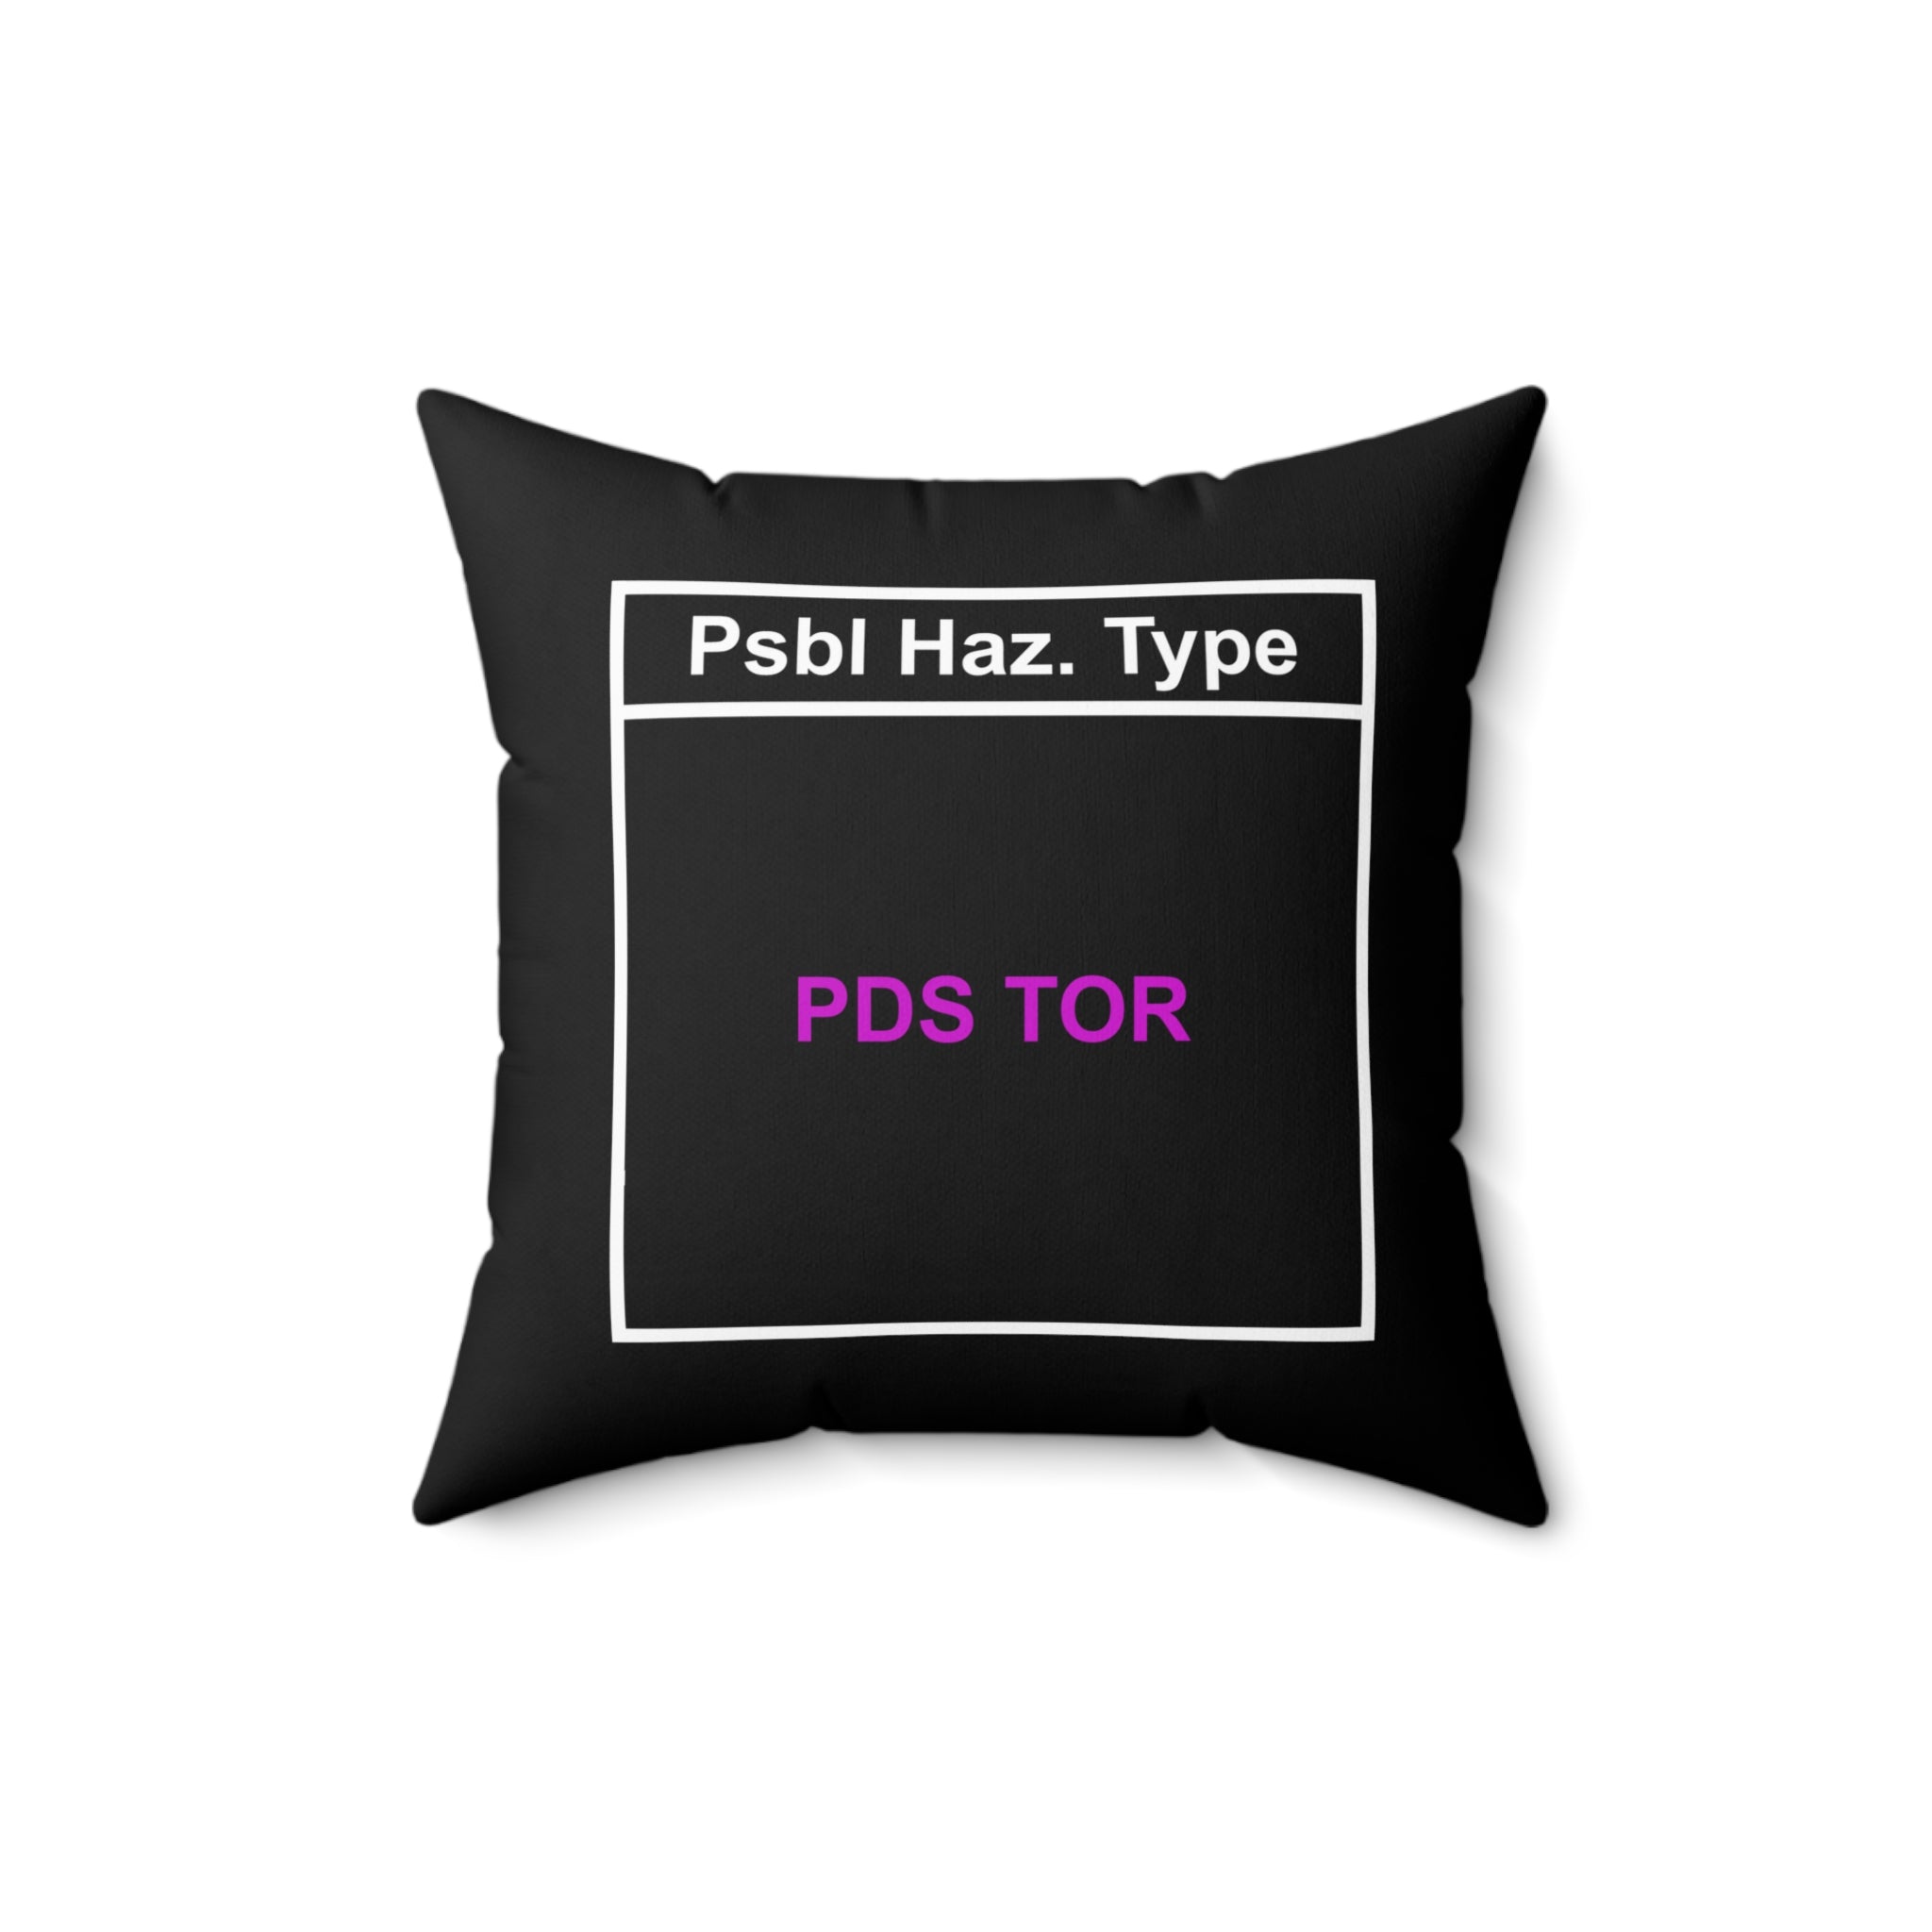 PDS TOR Throw Pillow 